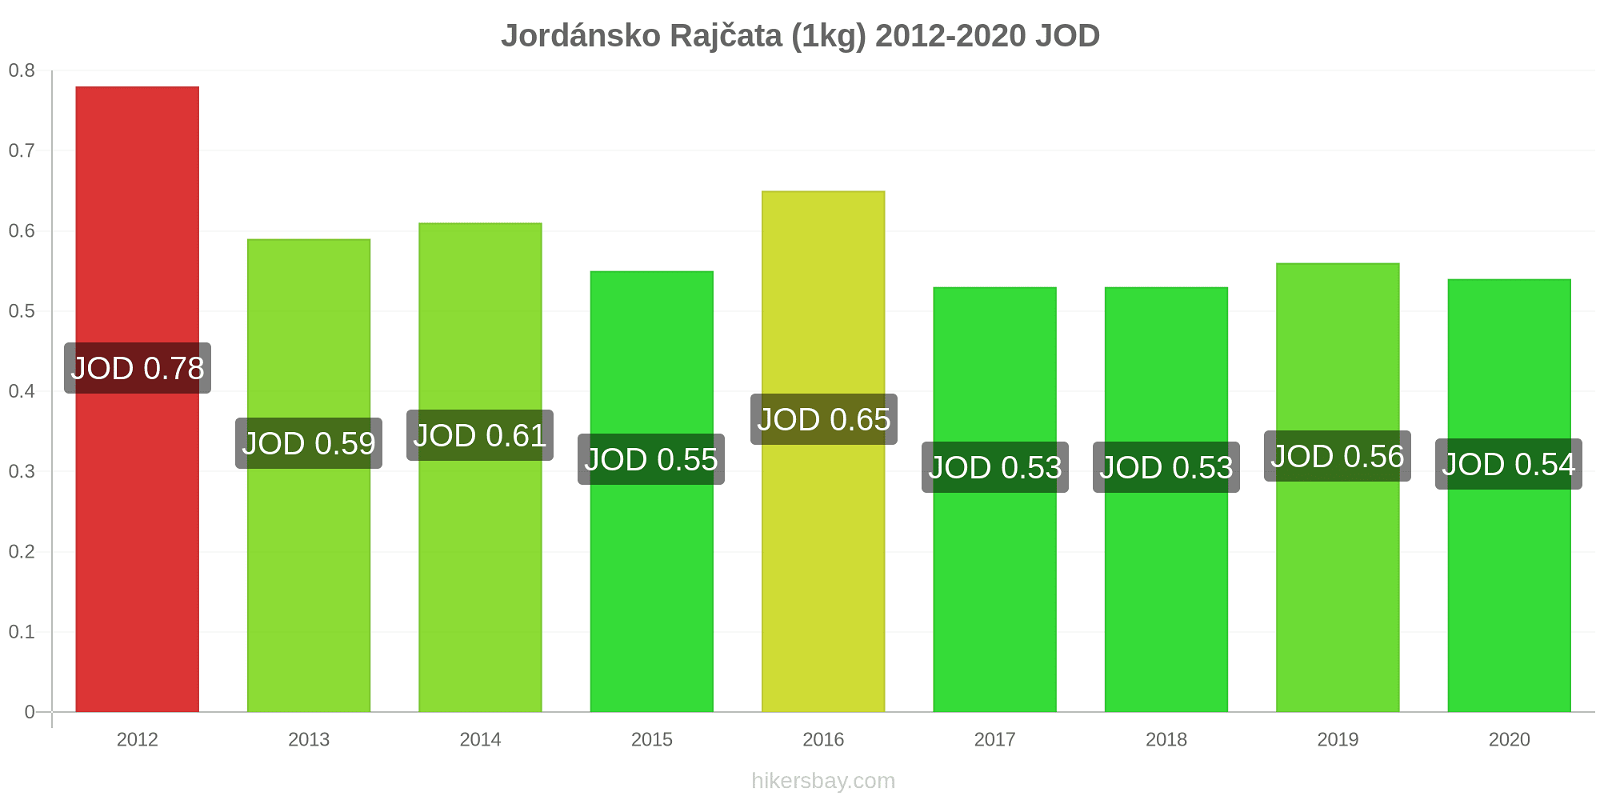 Jordánsko změny cen Rajčata (1kg) hikersbay.com